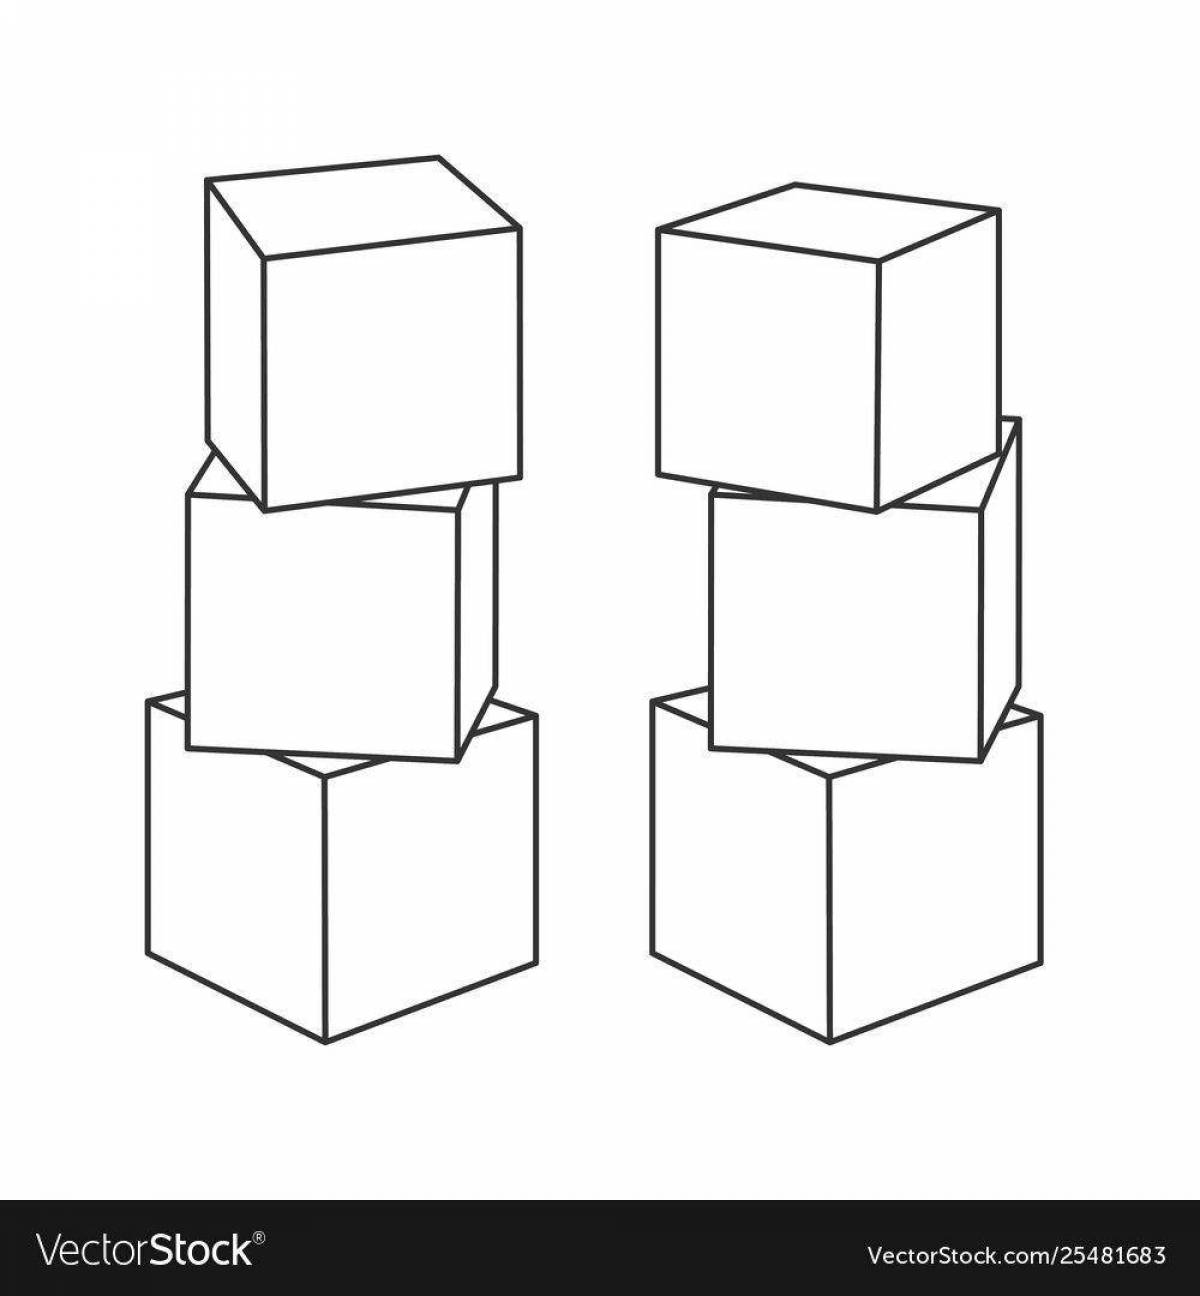 Башня из кубиков для раскрашивания